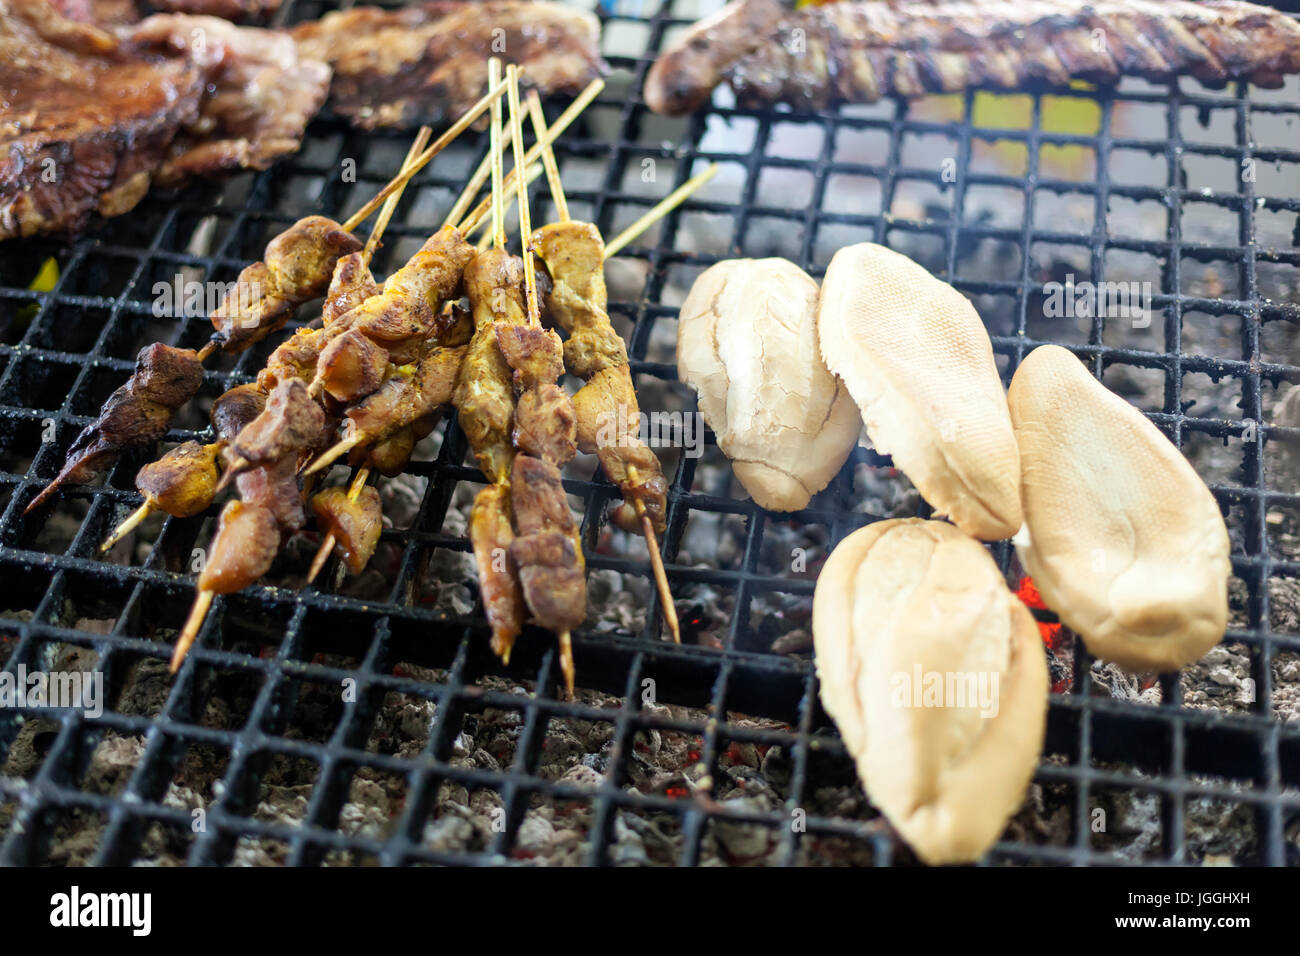 Spiedino di carne e pane sulla griglia per il barbecue per la preparazione di tapas tradizionali spagnole Foto Stock